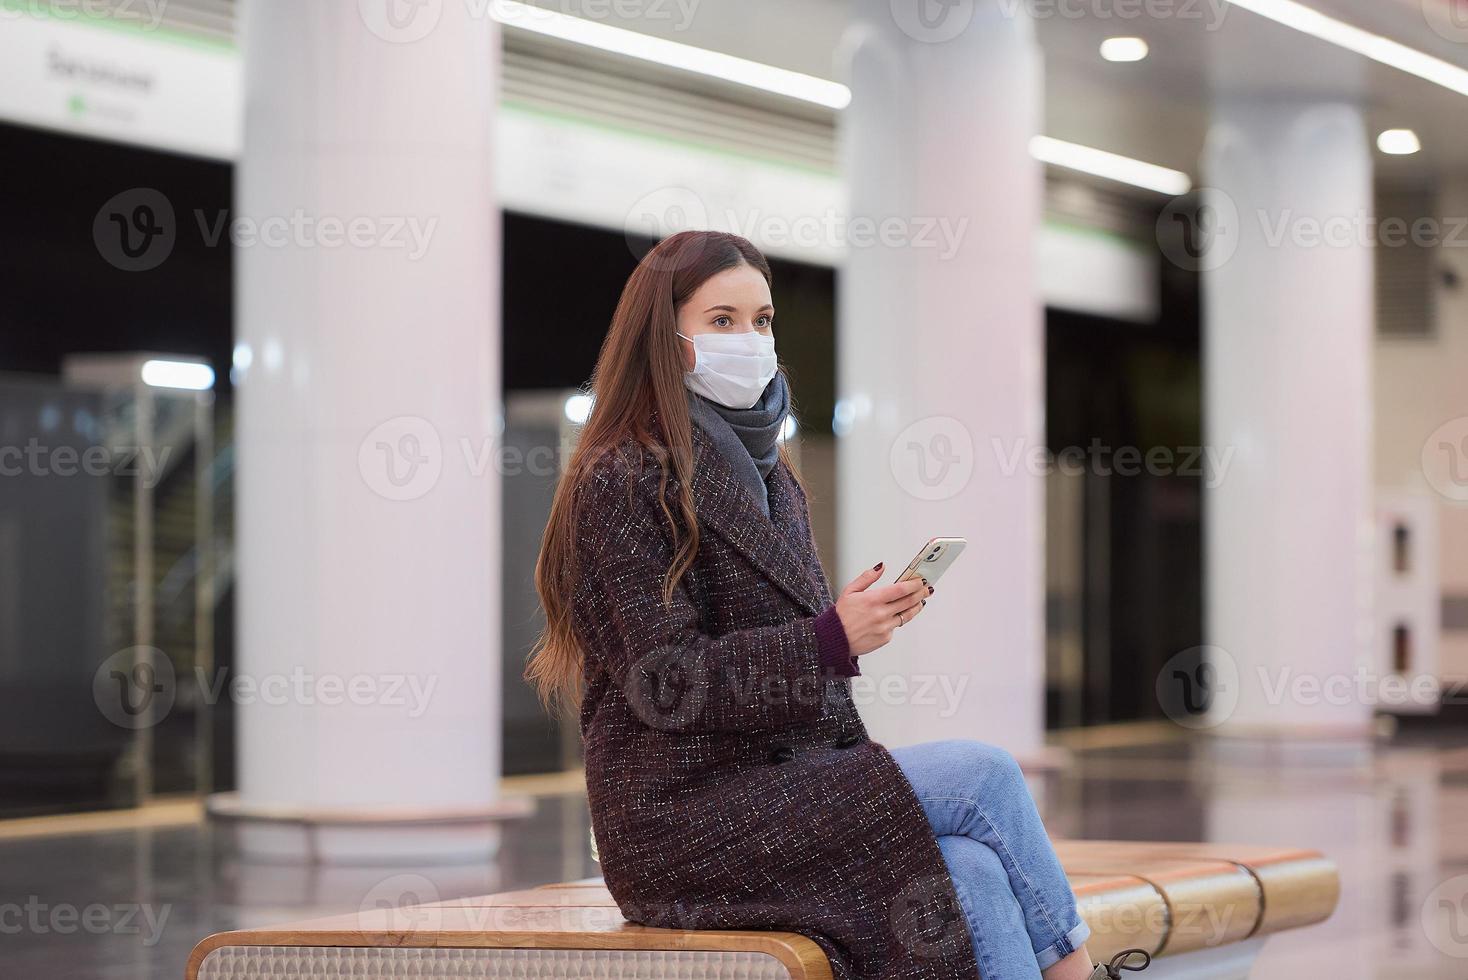 una donna con una maschera medica sta aspettando un treno e tiene in mano uno smartphone foto